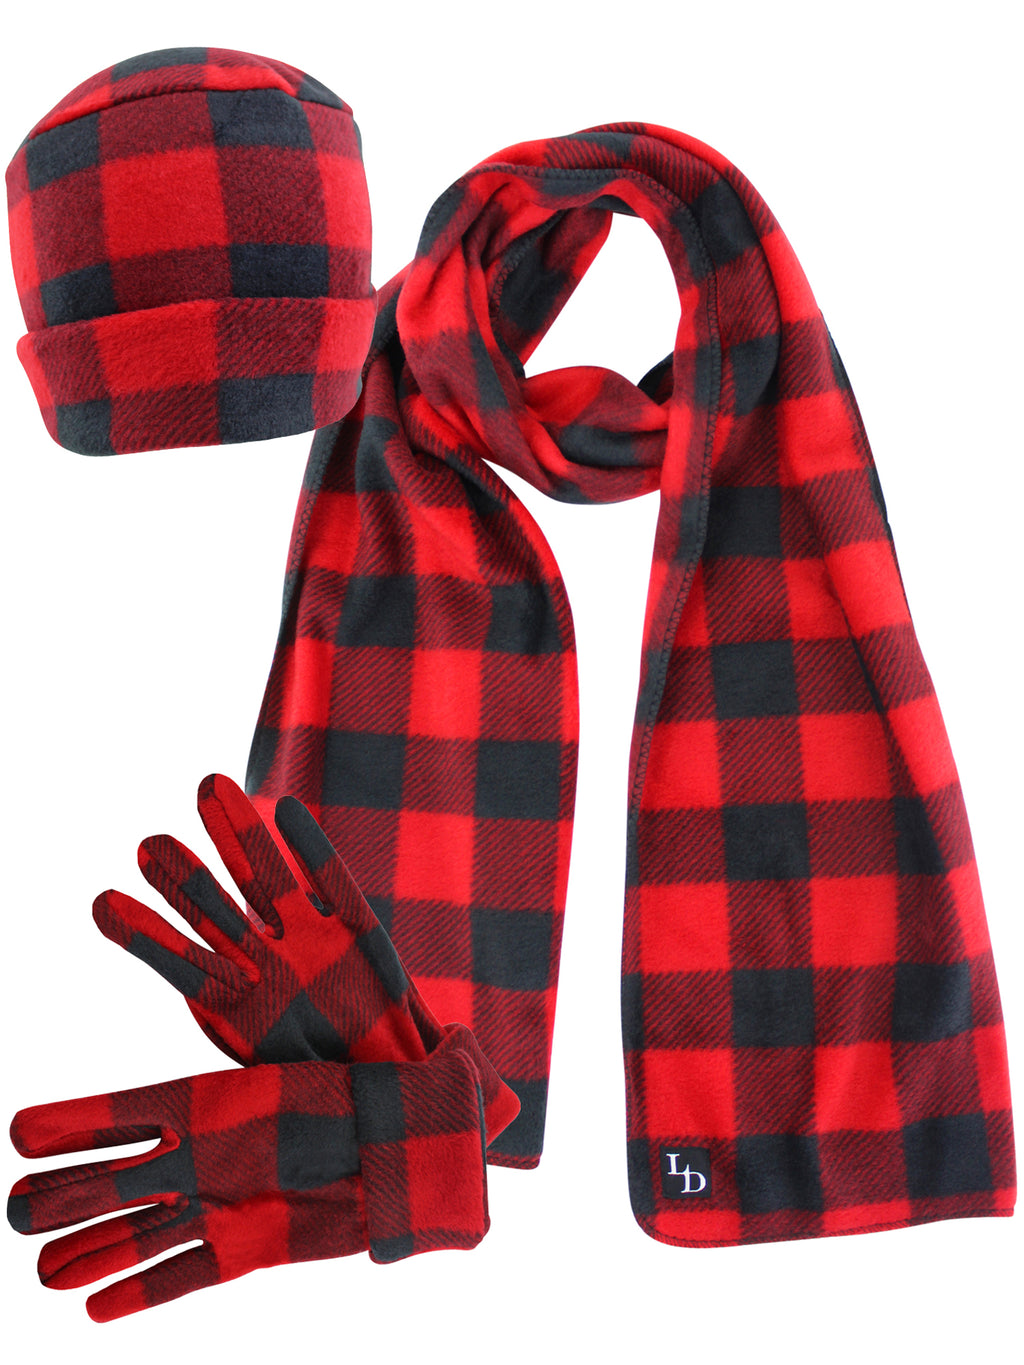 Red Plaid Fleece Scarf Glove & Hat Set